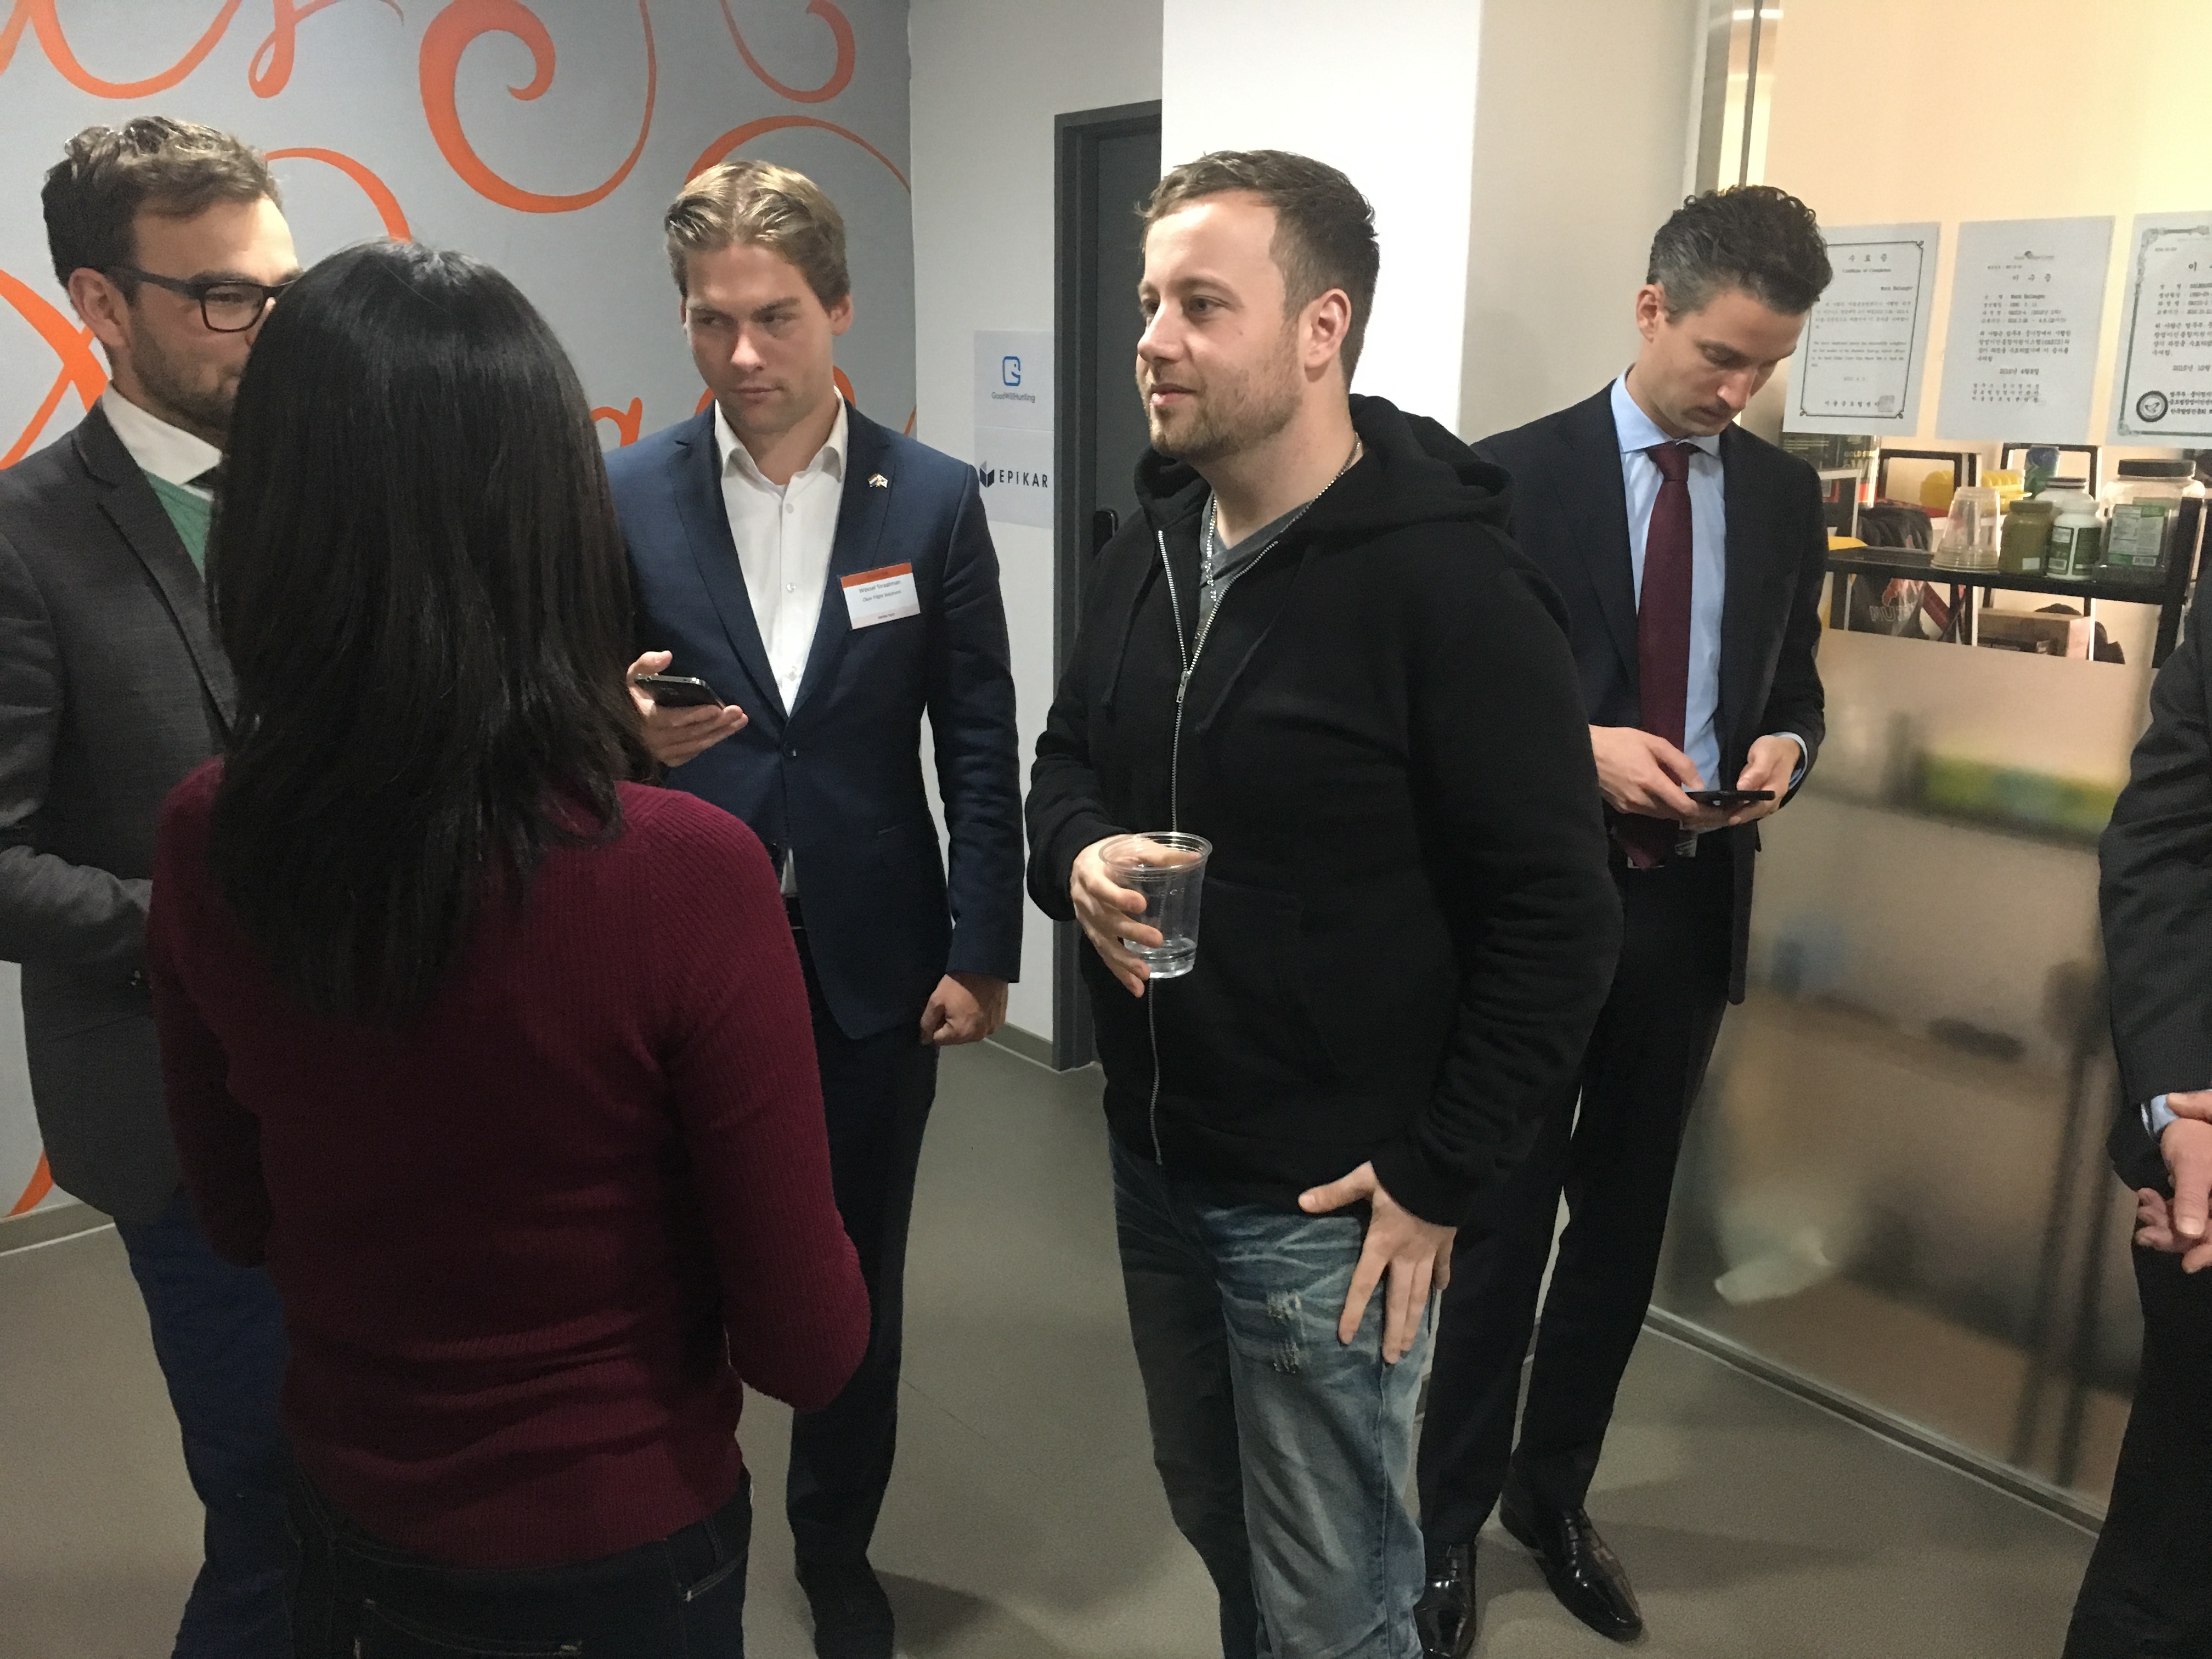 한국을 내한한 네덜란드 대사와 스타트업 관계자들이 서울글로벌창업센터 내 입주하고있는 FitBase의 네덜란드인 대표 마크(Mark Balneger)와 이야기를 나누고있다. 